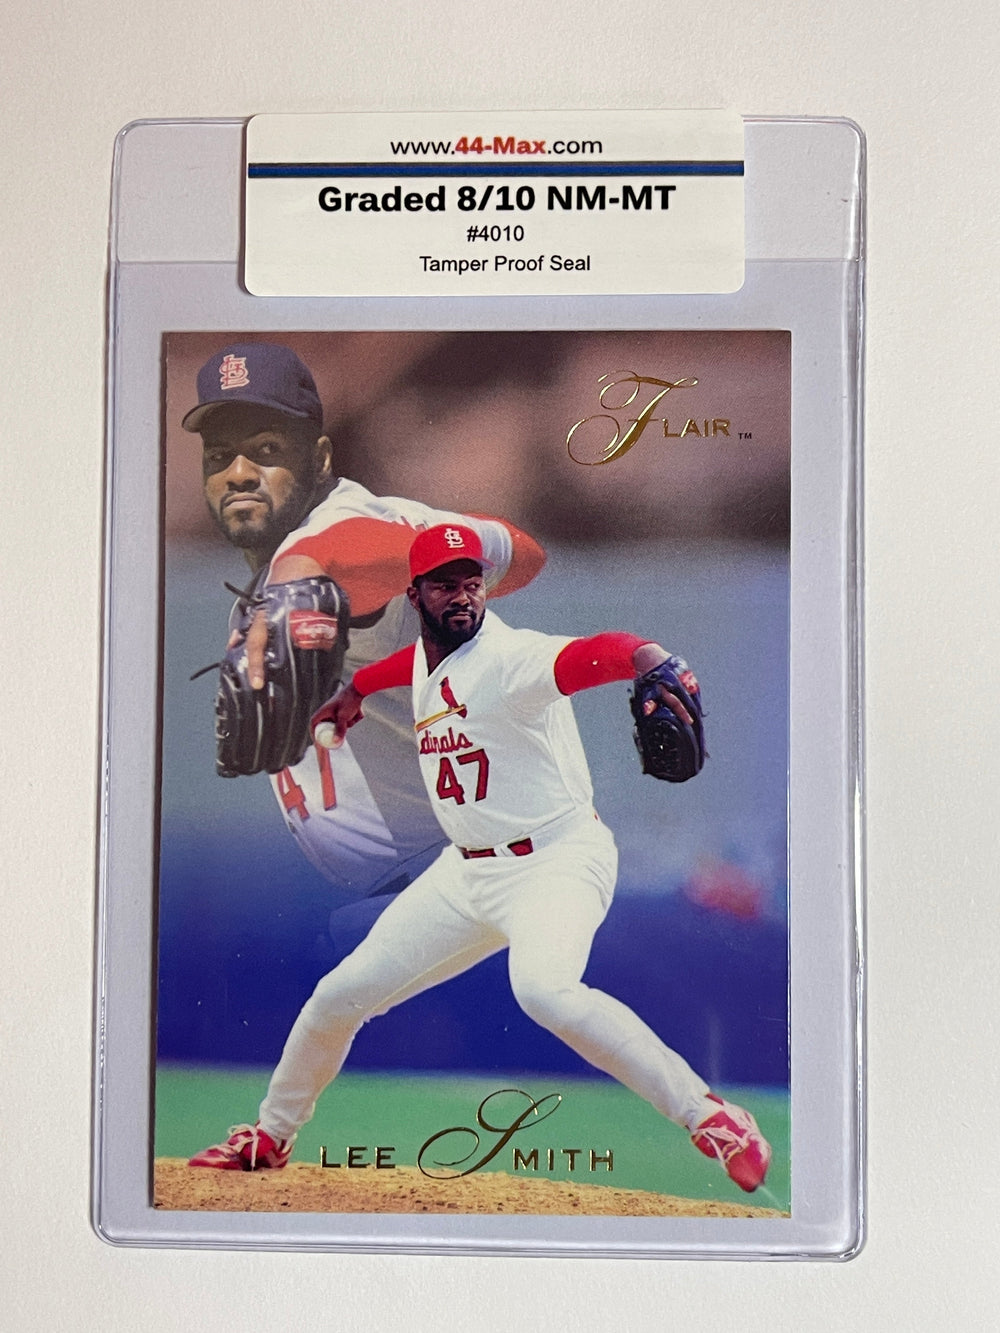 Lee Smith 1993 Flair Baseball Card. 44-Max 8/10 NM-MT  #4010